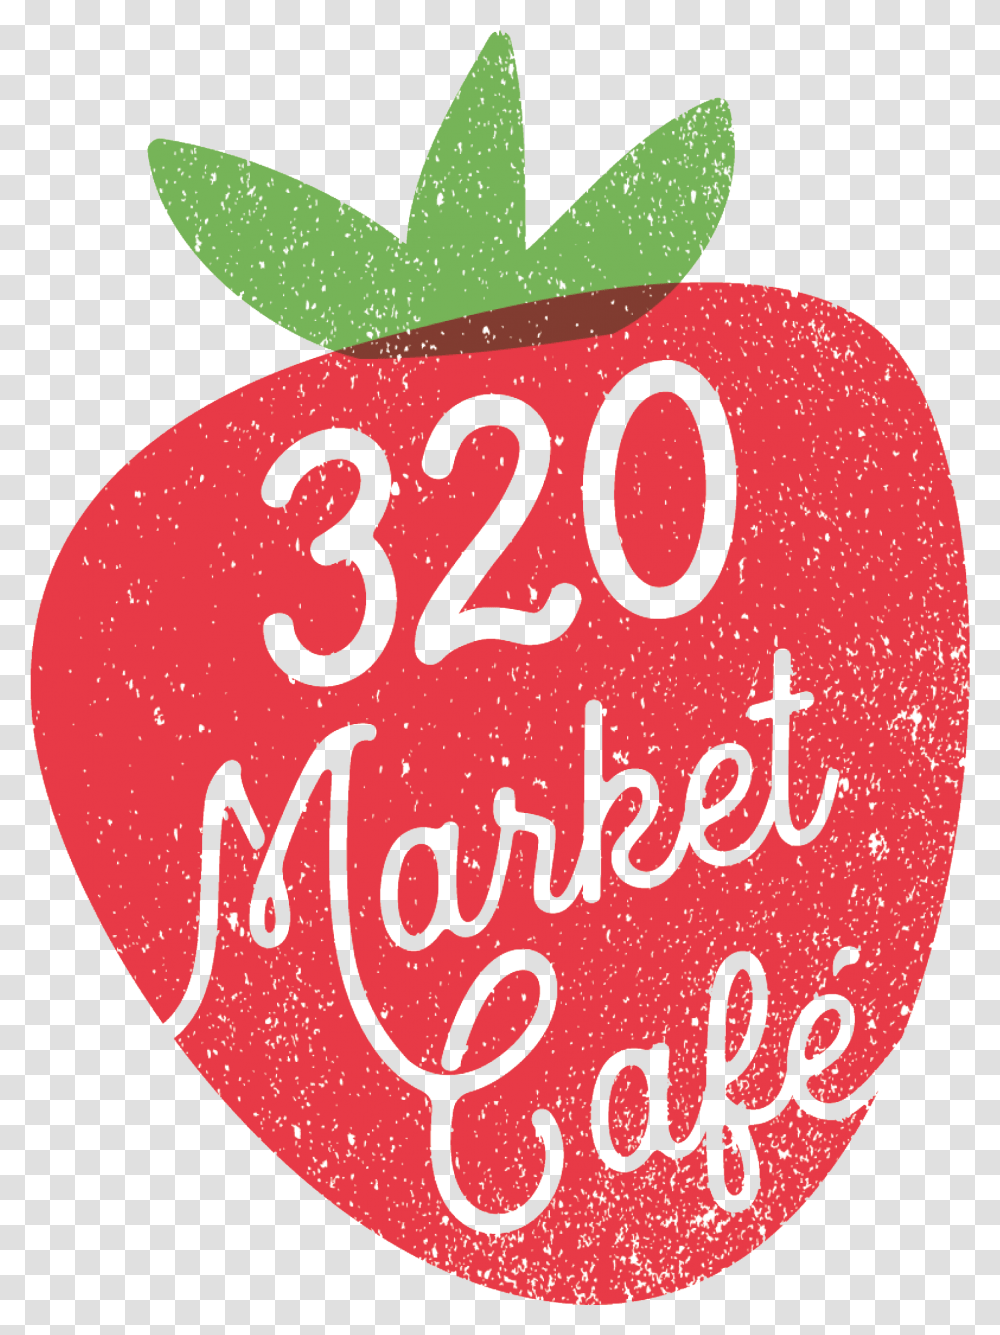 Market Caf 320, Text, Number, Symbol, Plant Transparent Png